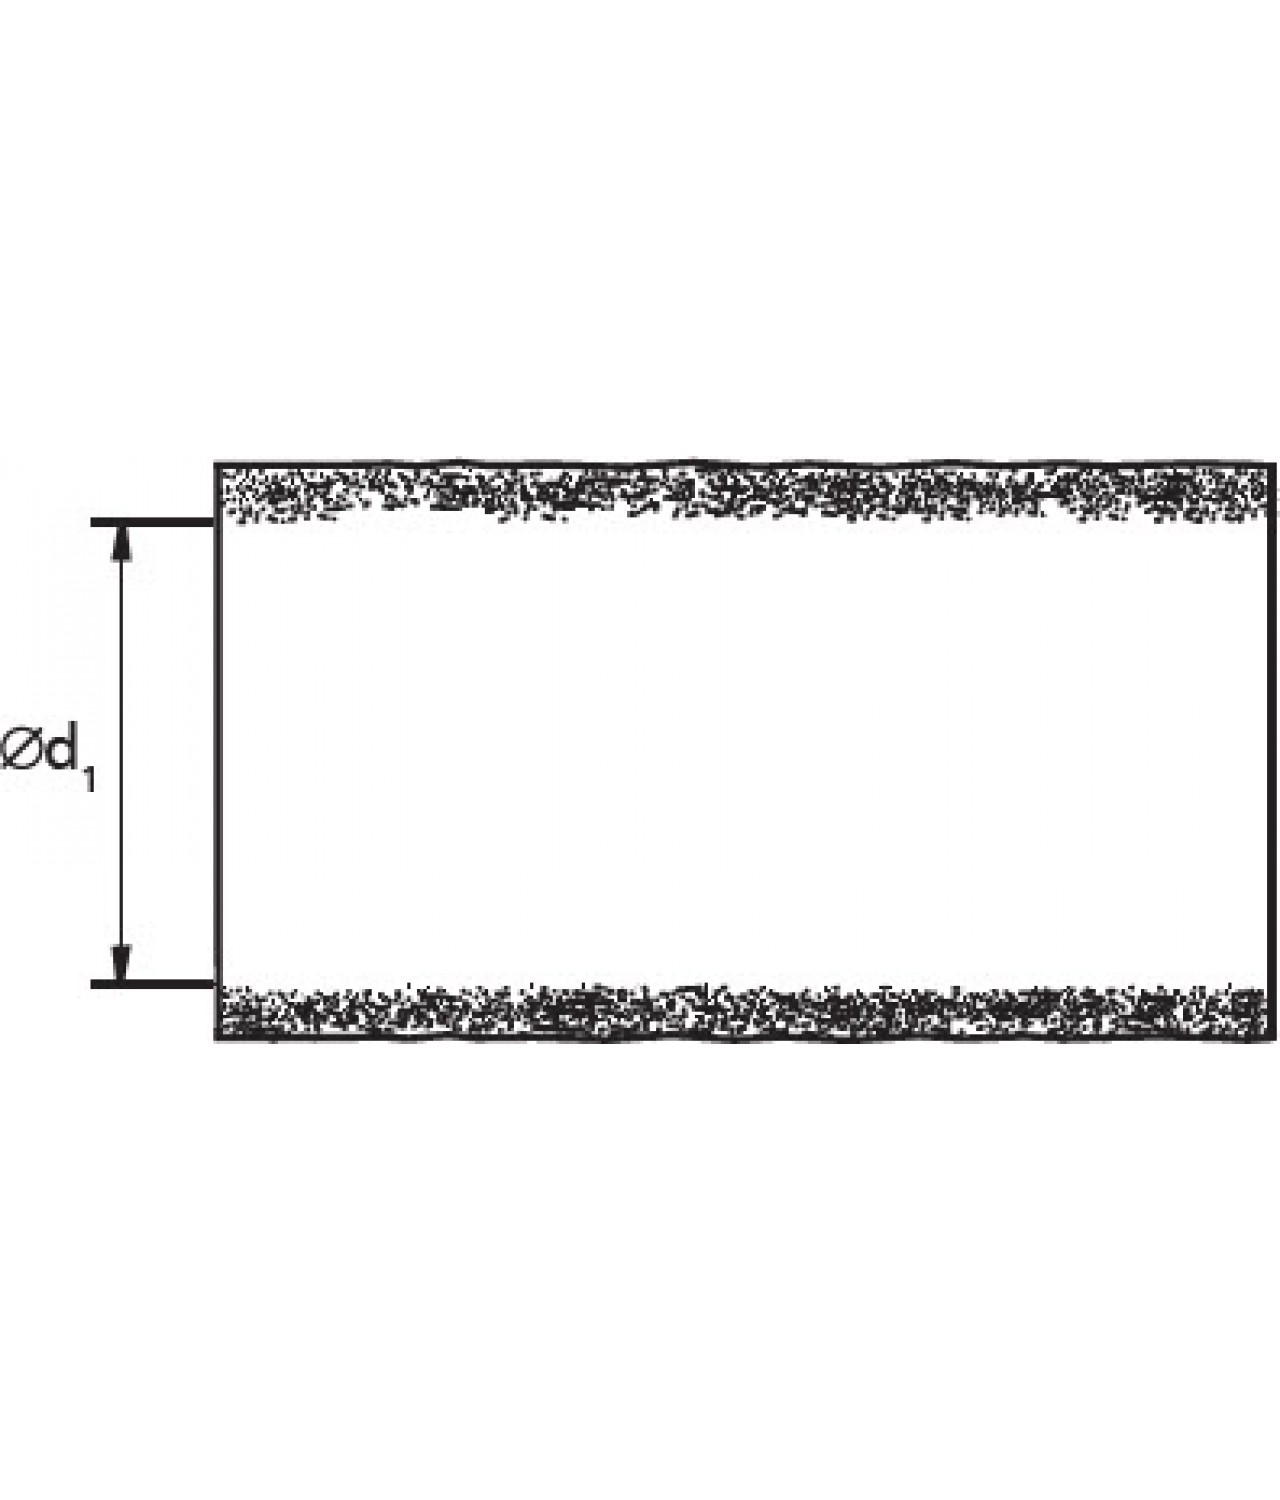 Ortakių antikondensacinė termoizoliacija ISO50/160/10, 50 mm Ø160 mm, L=10 m - brėžinys